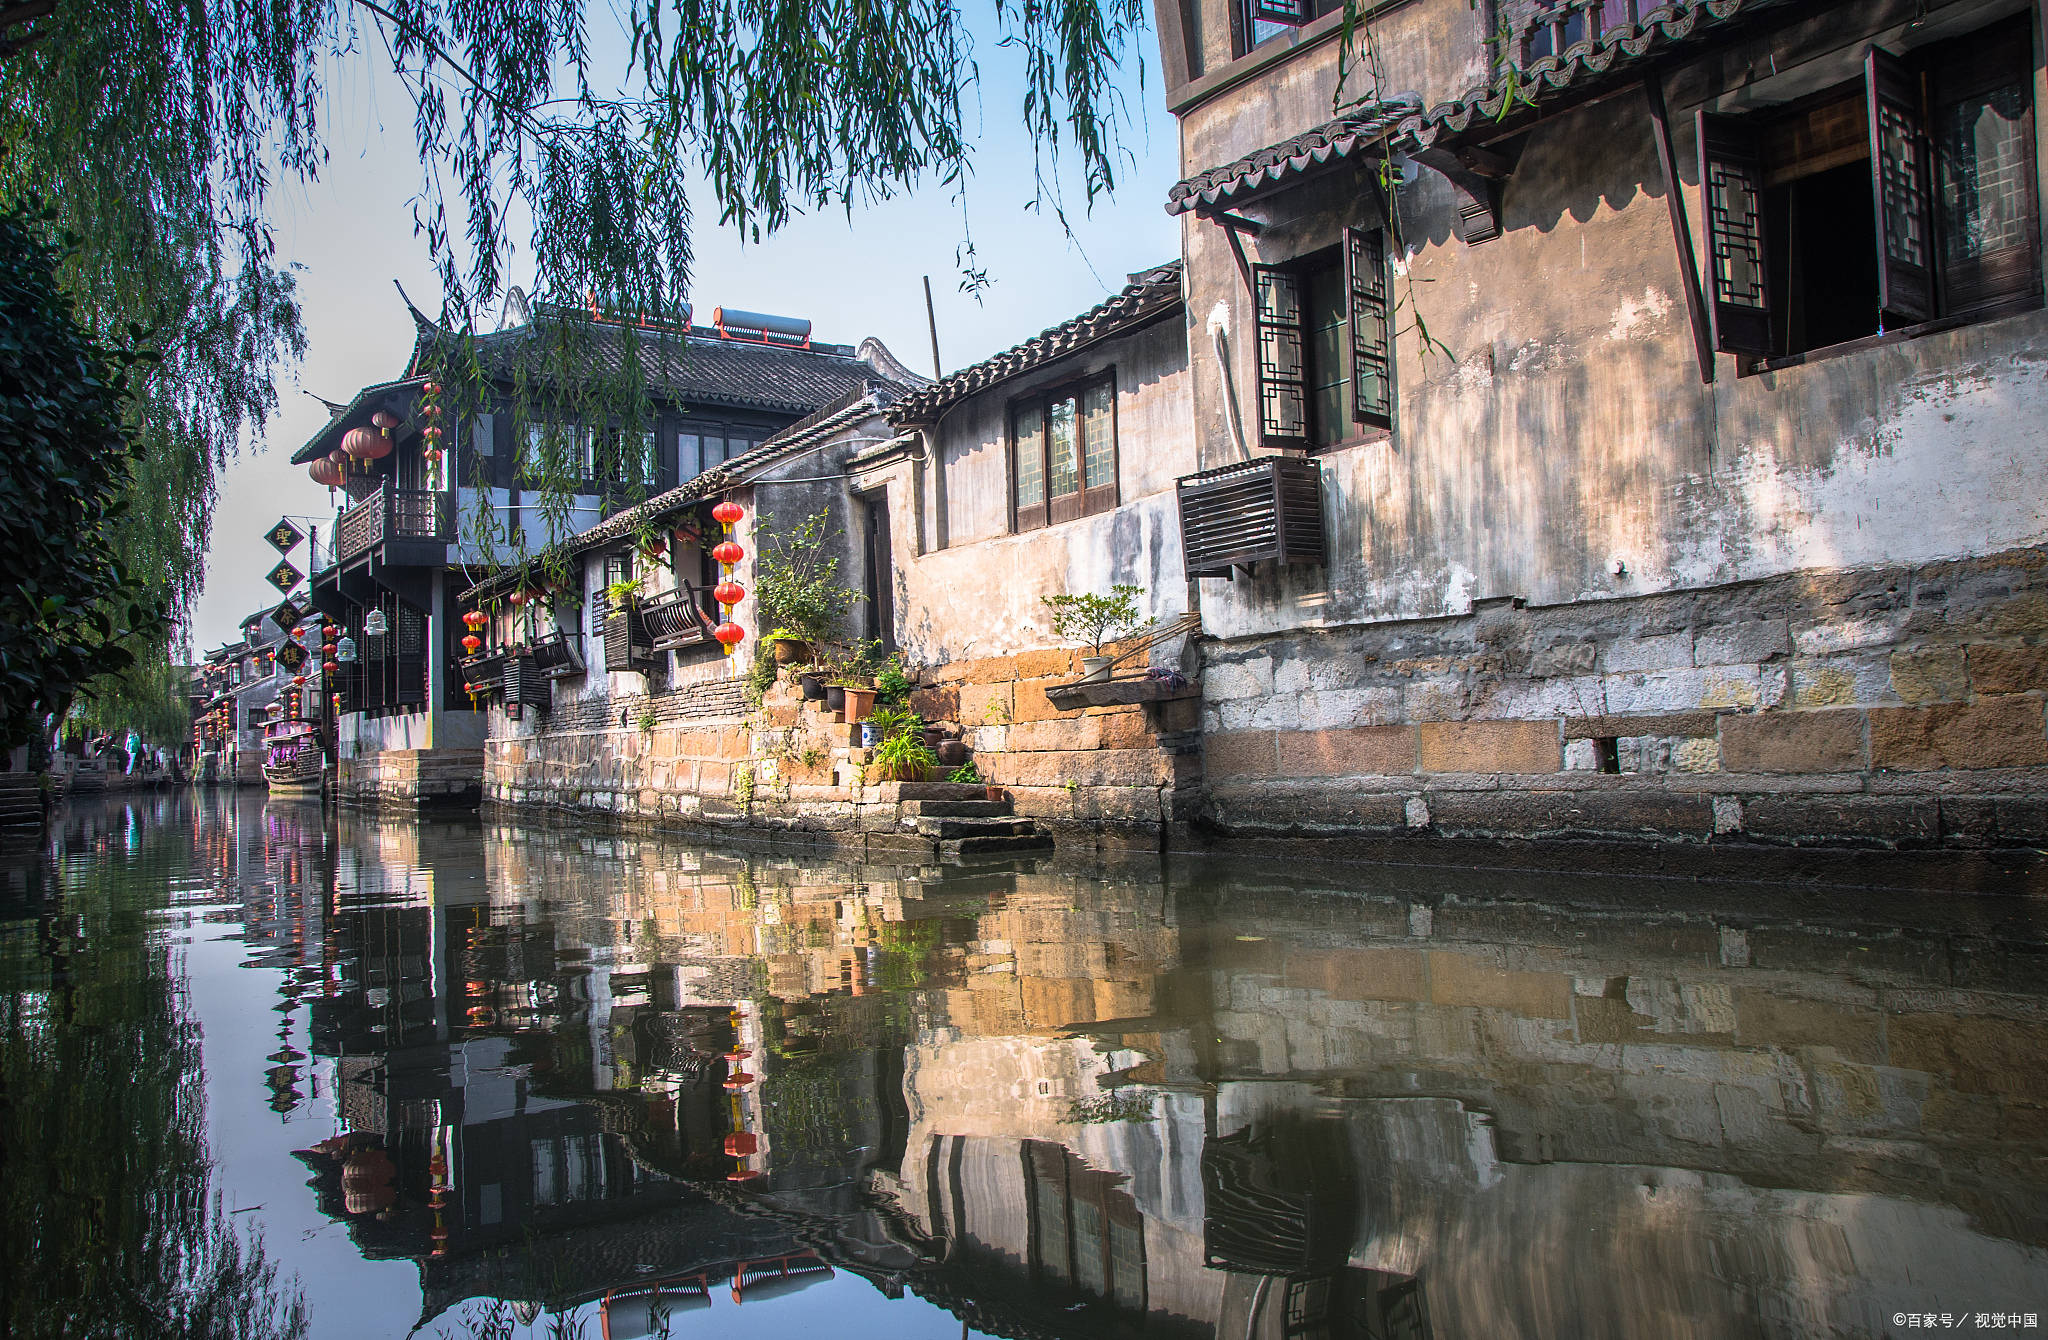 游览嘉善县西塘古镇景区,可以让人感受到浓厚的历史文化